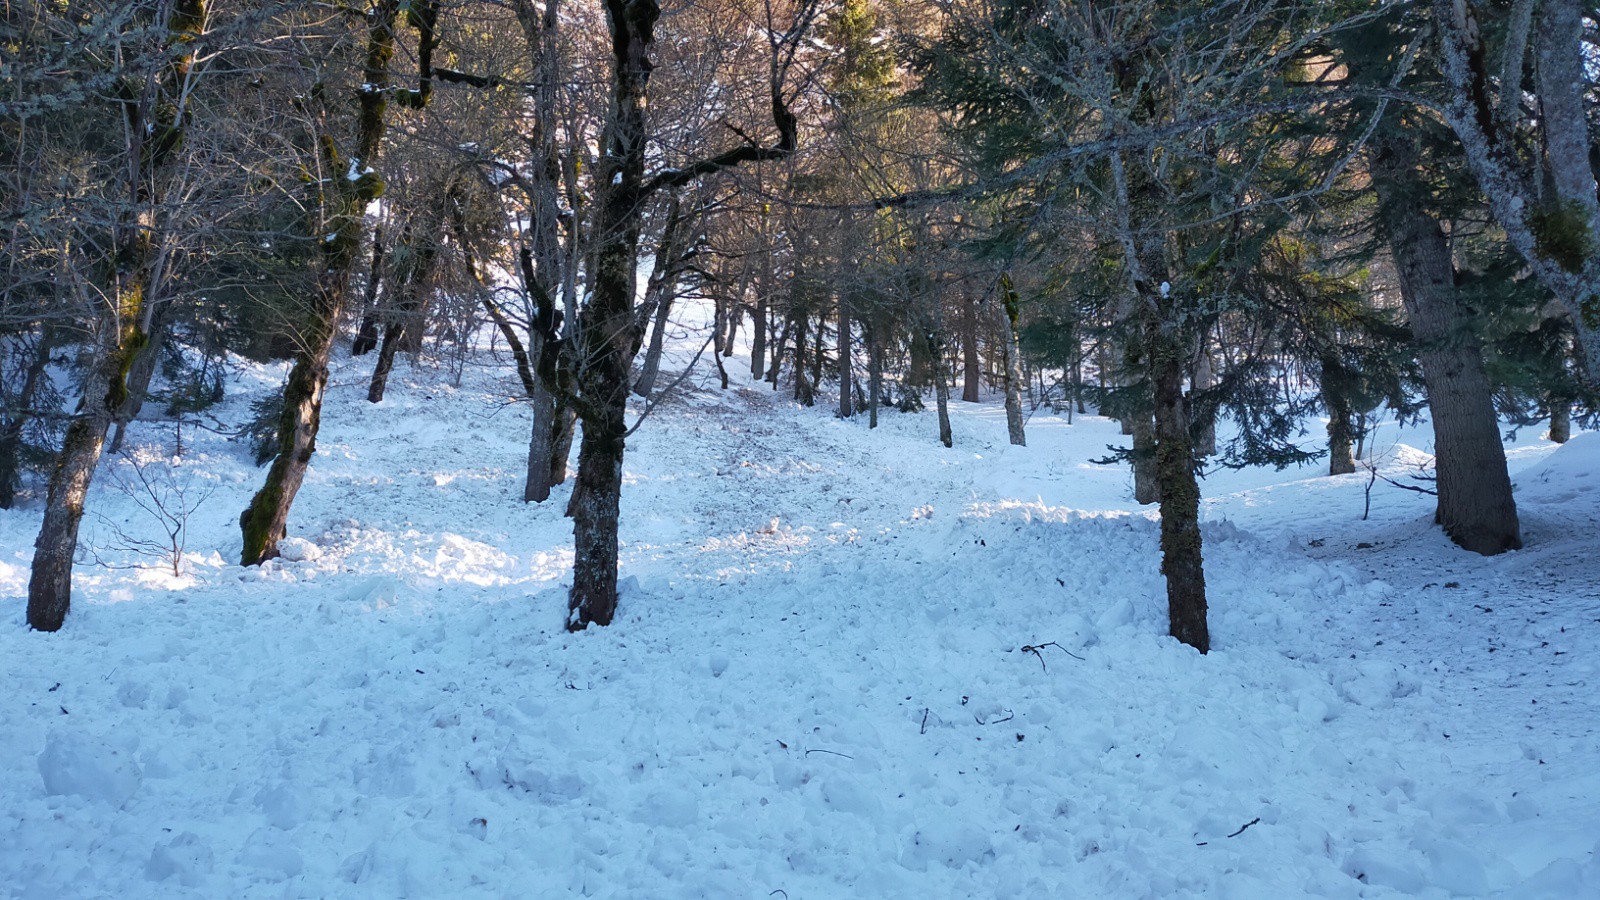 Coulée de neige lourde en forêt, quand même !